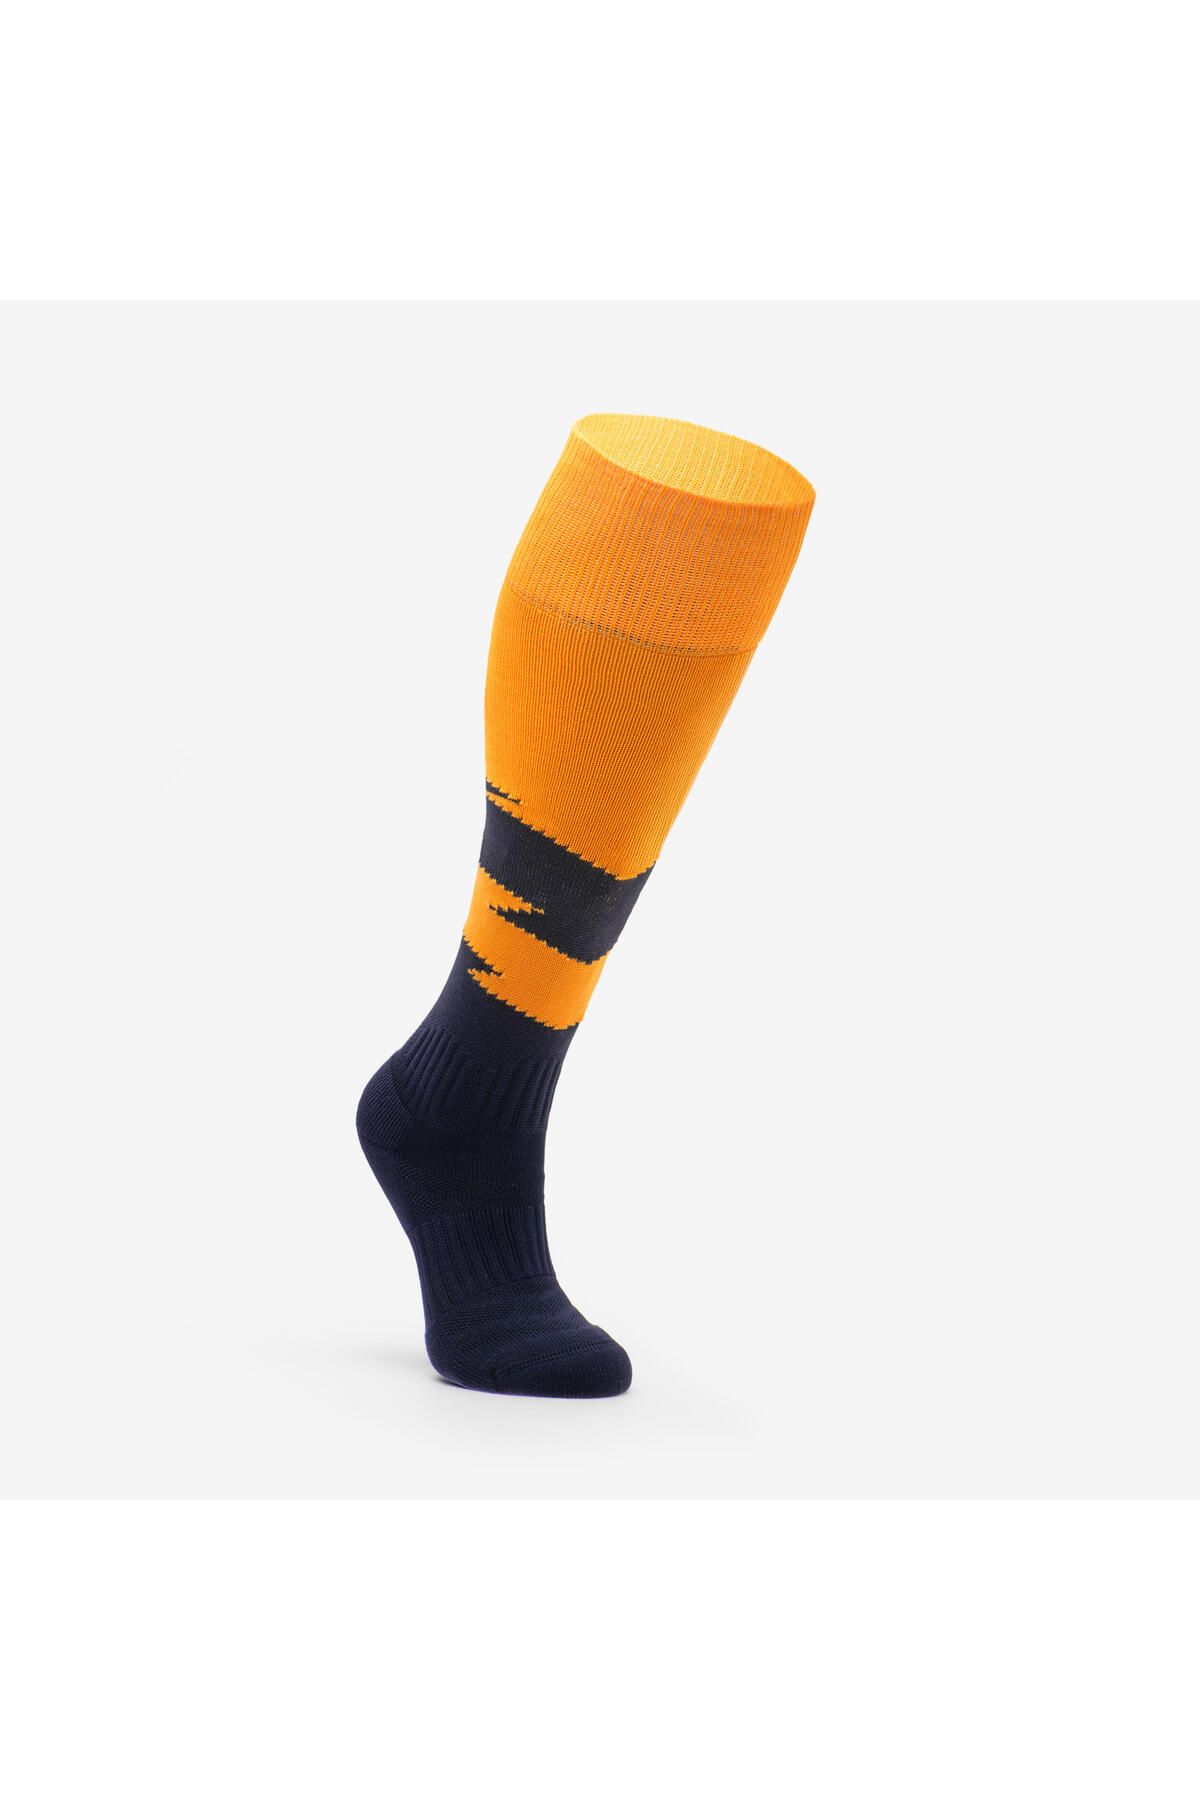 Decathlon Çocuk Futbol Çorabı Nefes Alan Teri Dışarı Atar Dayanıklı Ayağı Destekleyen Havalandırmalı